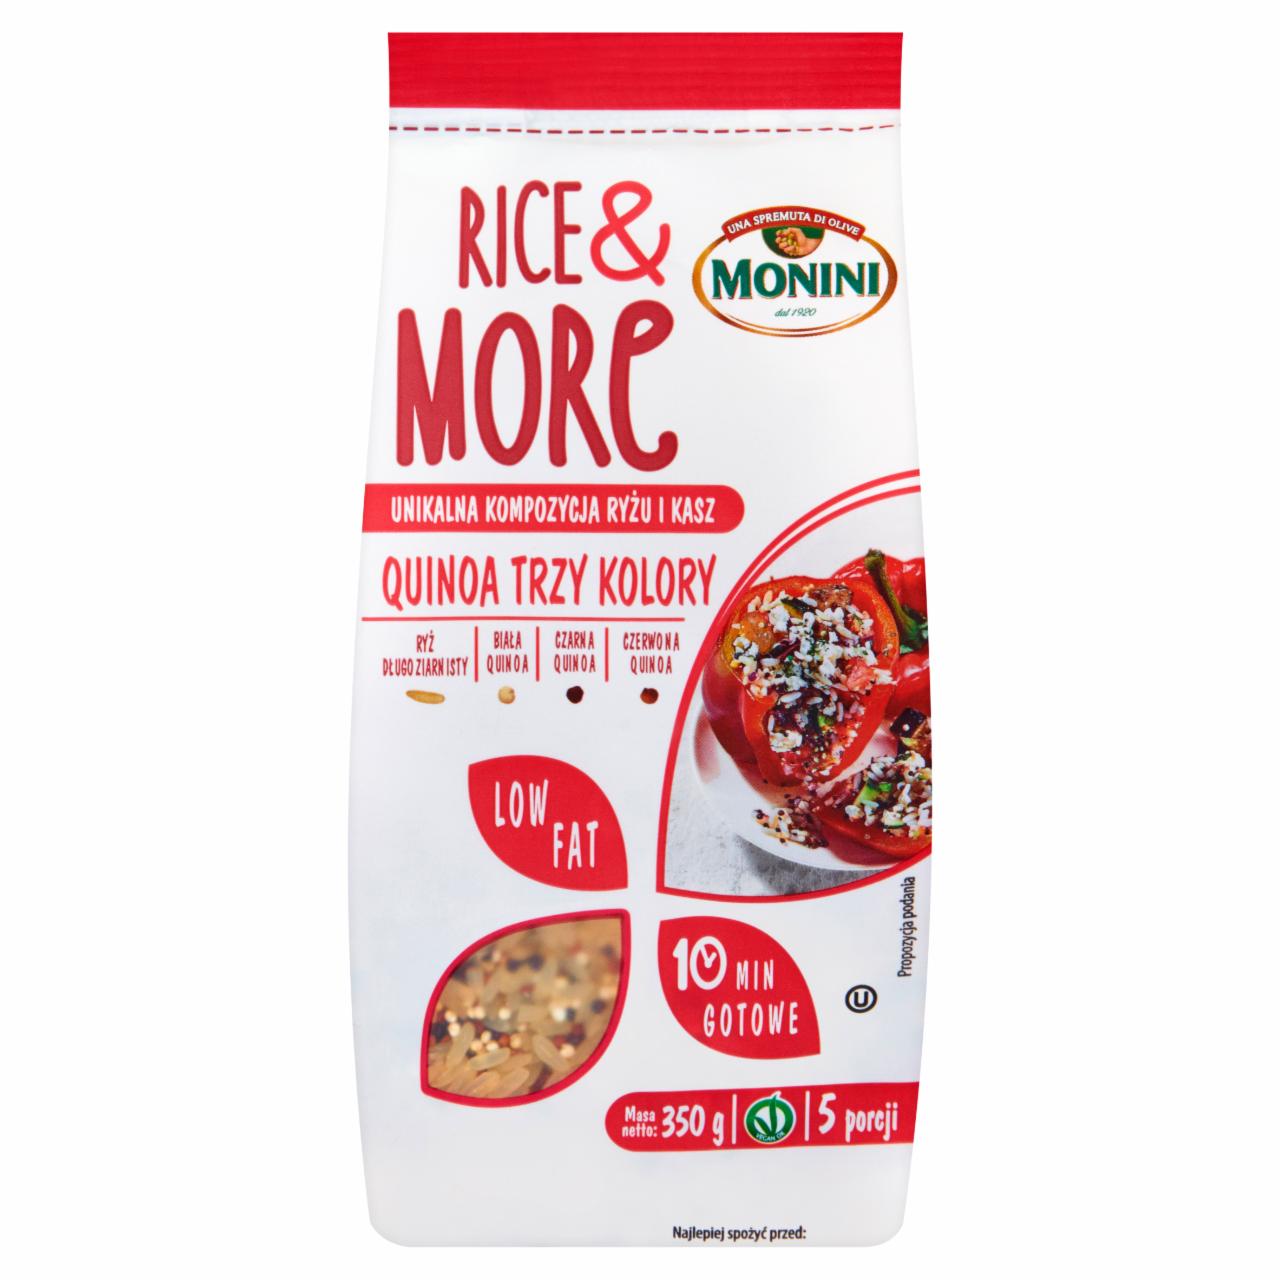 Zdjęcia - Monini Rice & More Quinoa Trzy Kolory Unikalna kompozycja ryżu i kasz 350 g